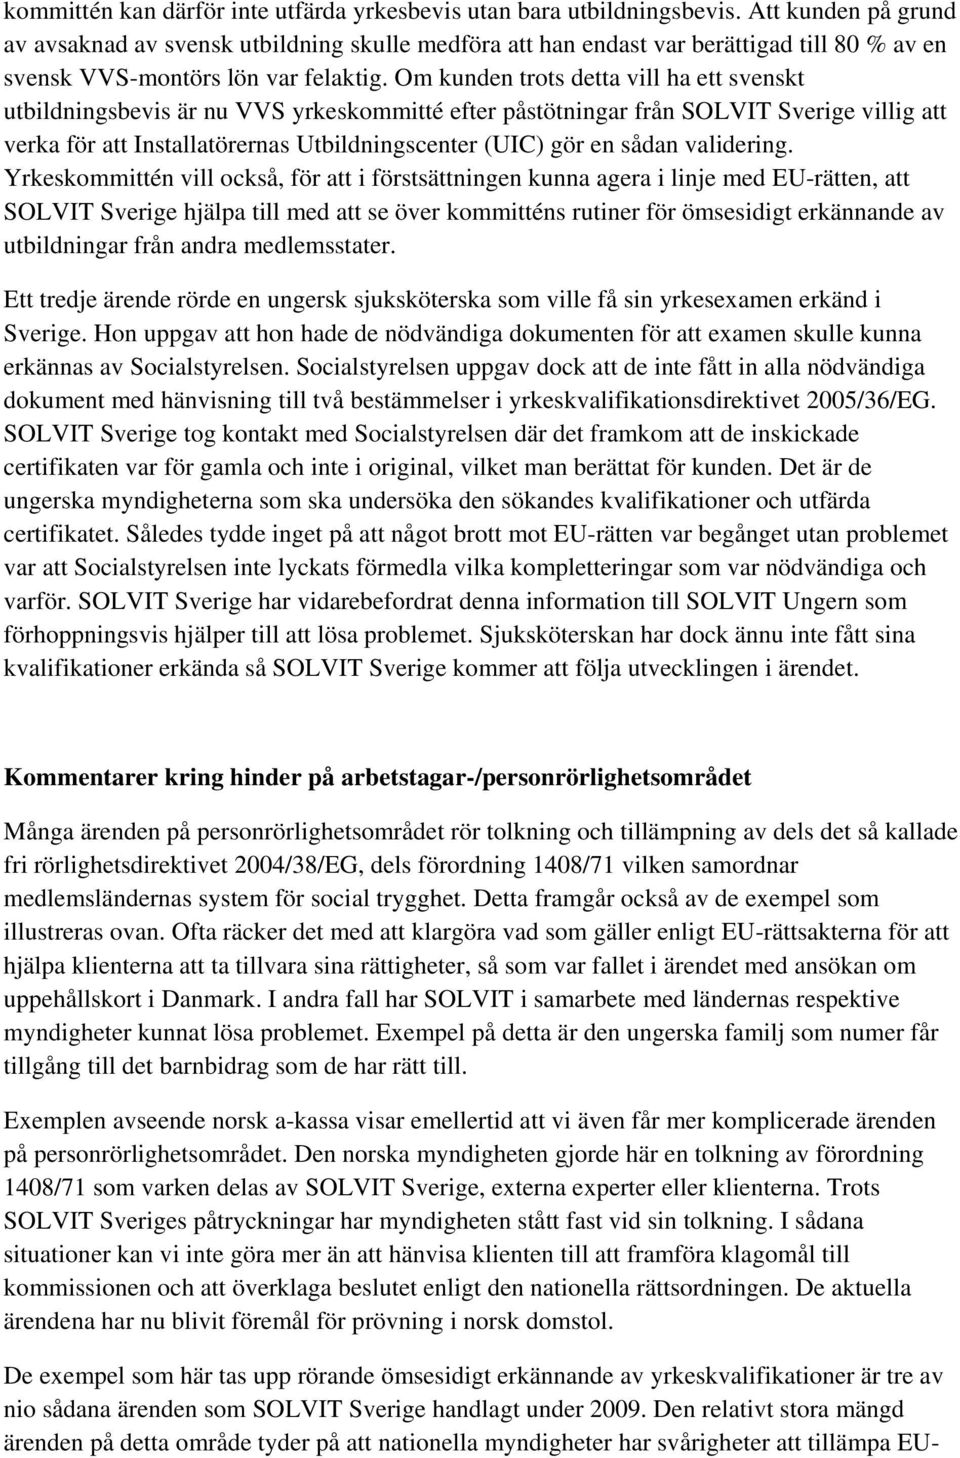 Om kunden trots detta vill ha ett svenskt utbildningsbevis är nu VVS yrkeskommitté efter påstötningar från SOLVIT Sverige villig att verka för att Installatörernas Utbildningscenter (UIC) gör en